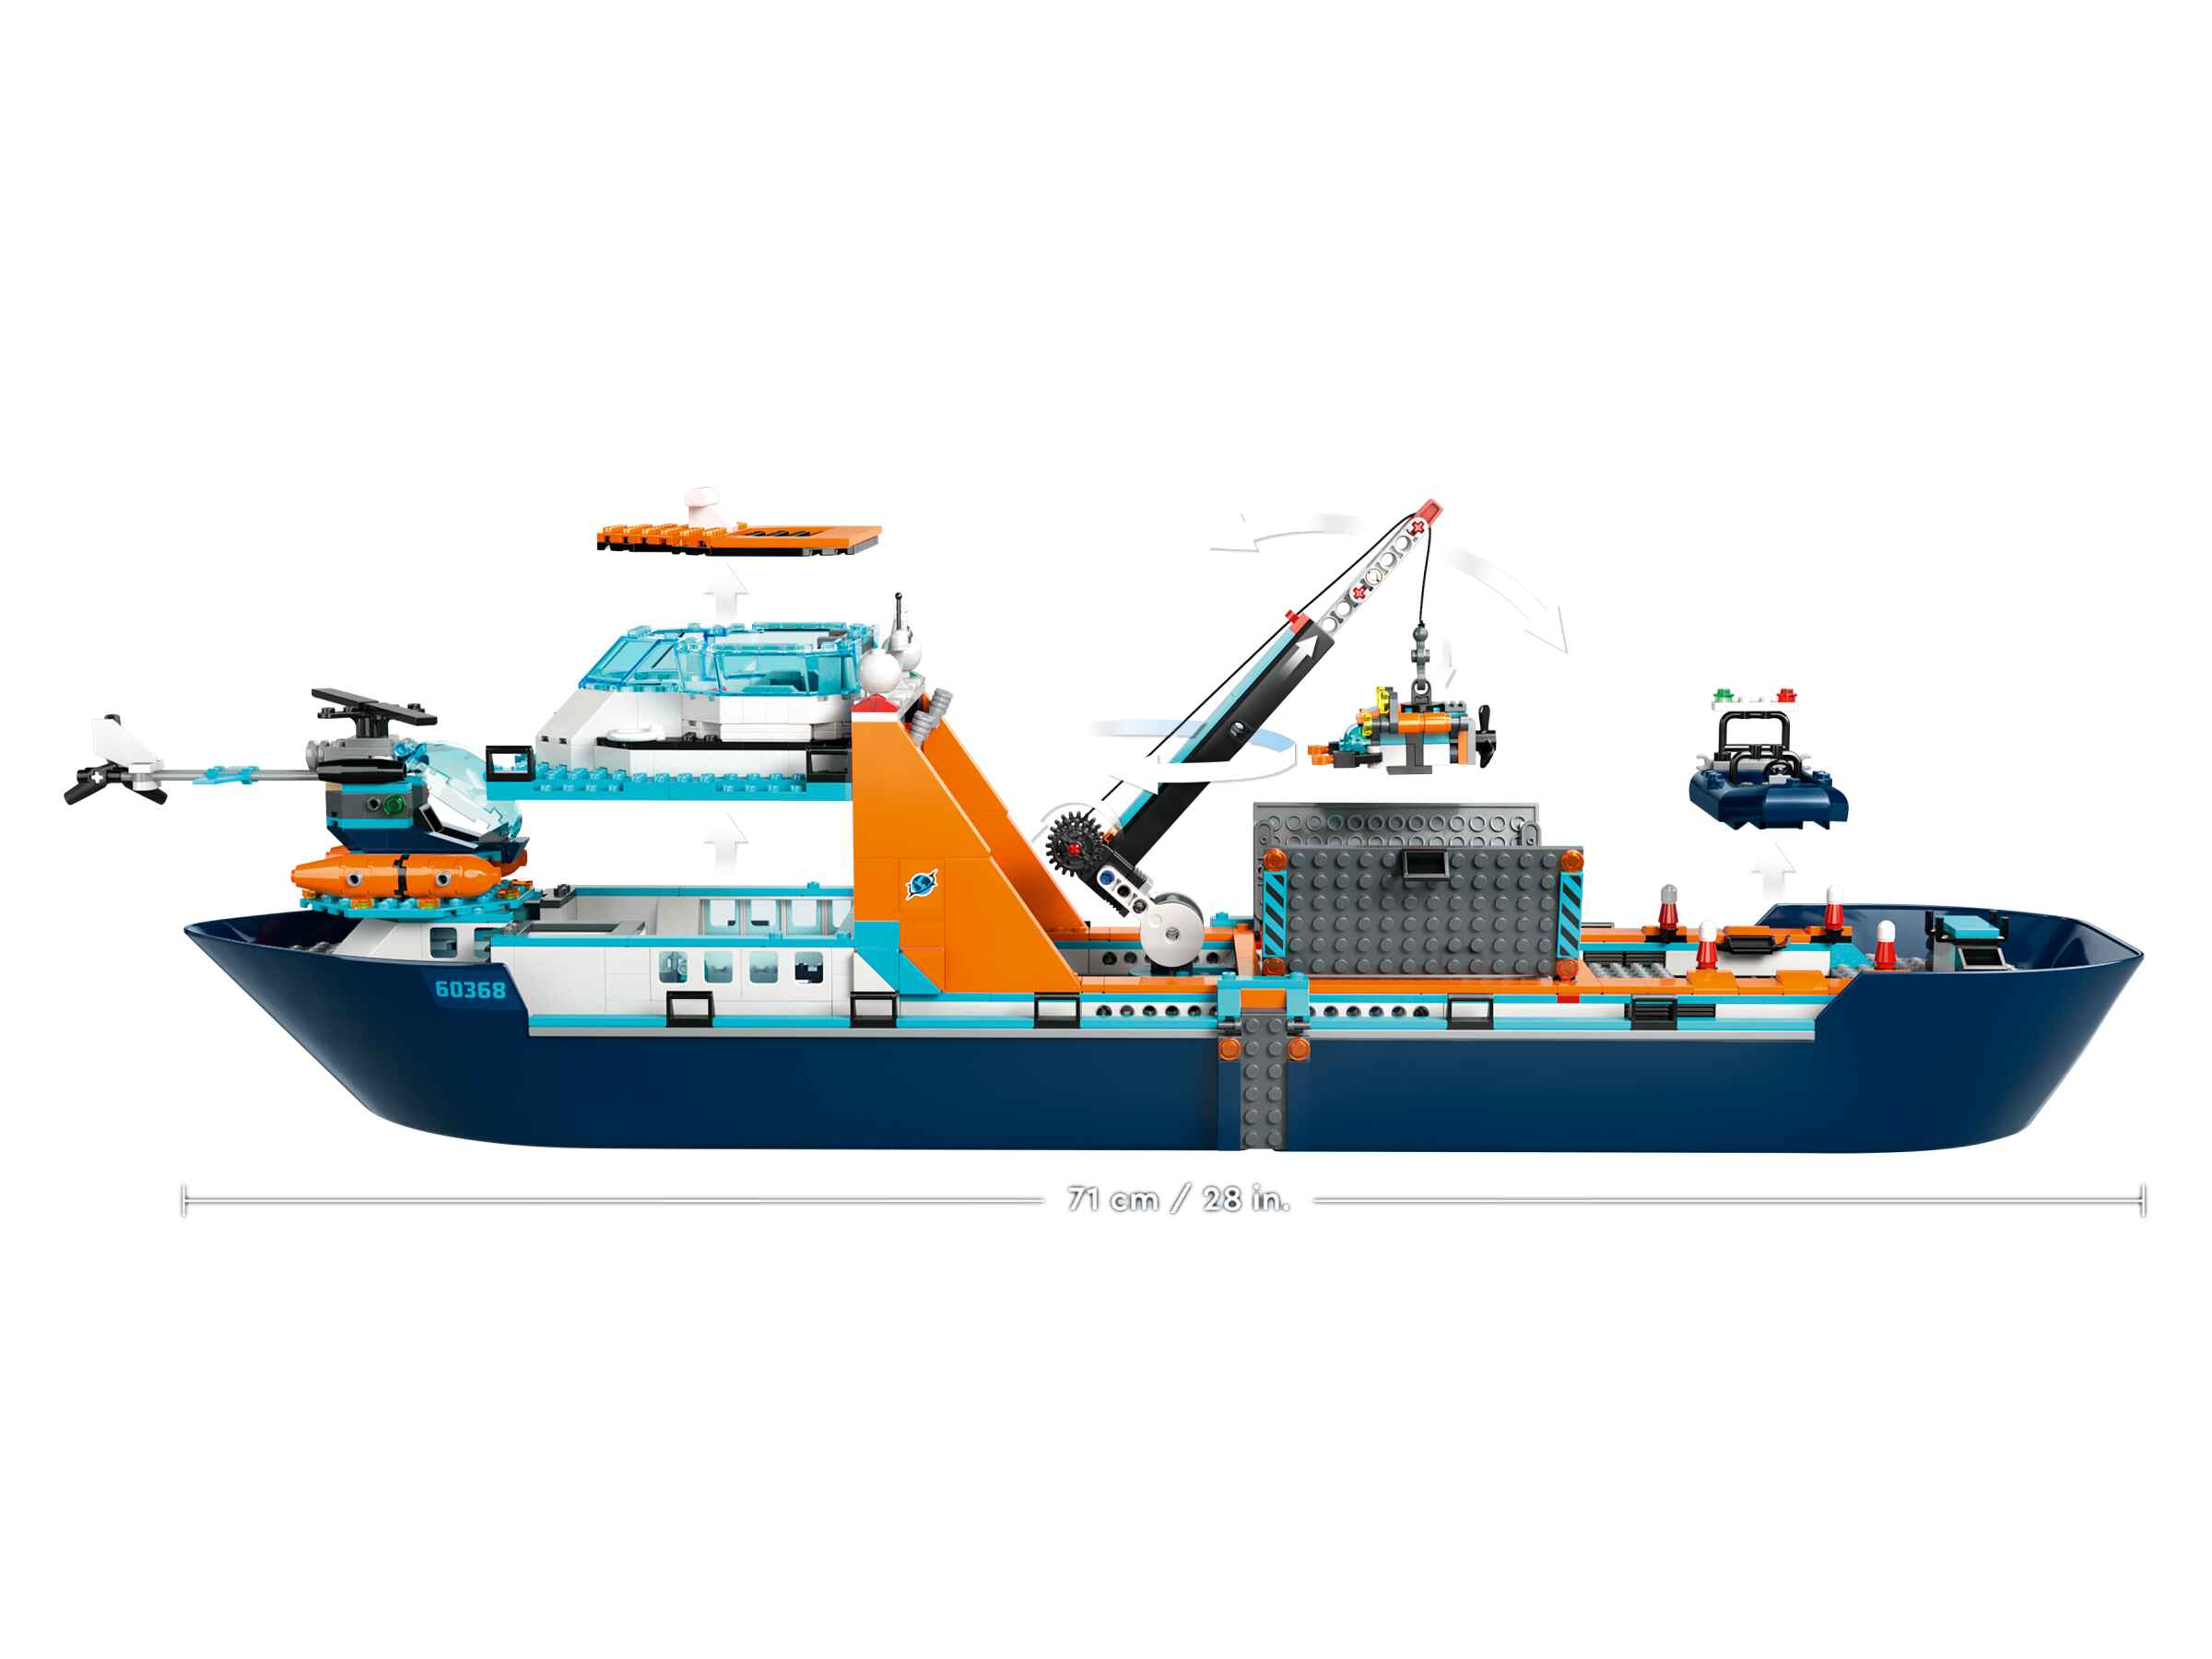 LEGO 60368 City Arktis-Forschungsschiff, 7 Minifiguren, Schwertwal, Hubschrauber